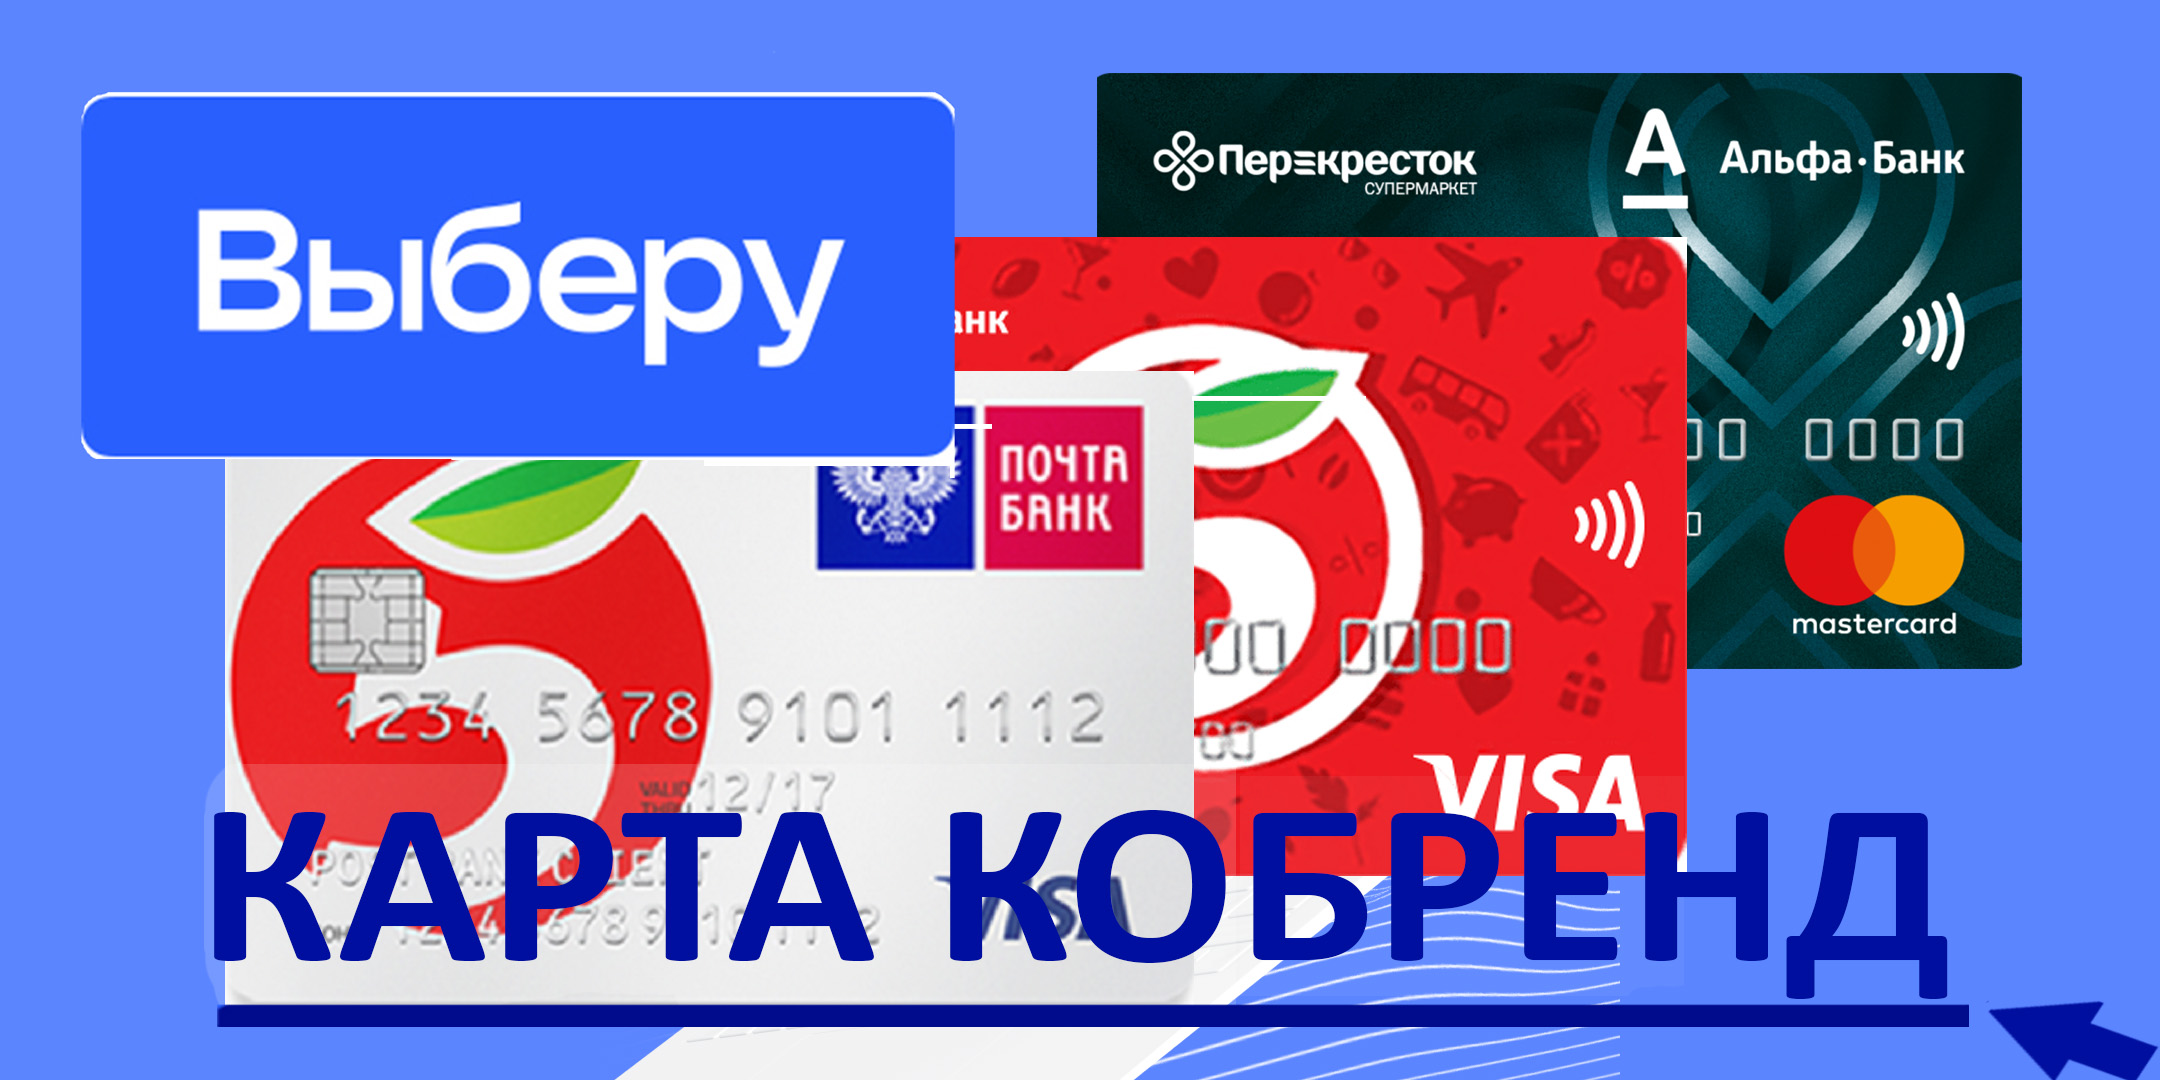 фото: «Выберу.ру»: как заработать 1 000 рублей на подготовке к Новому году с кобрендовой картой